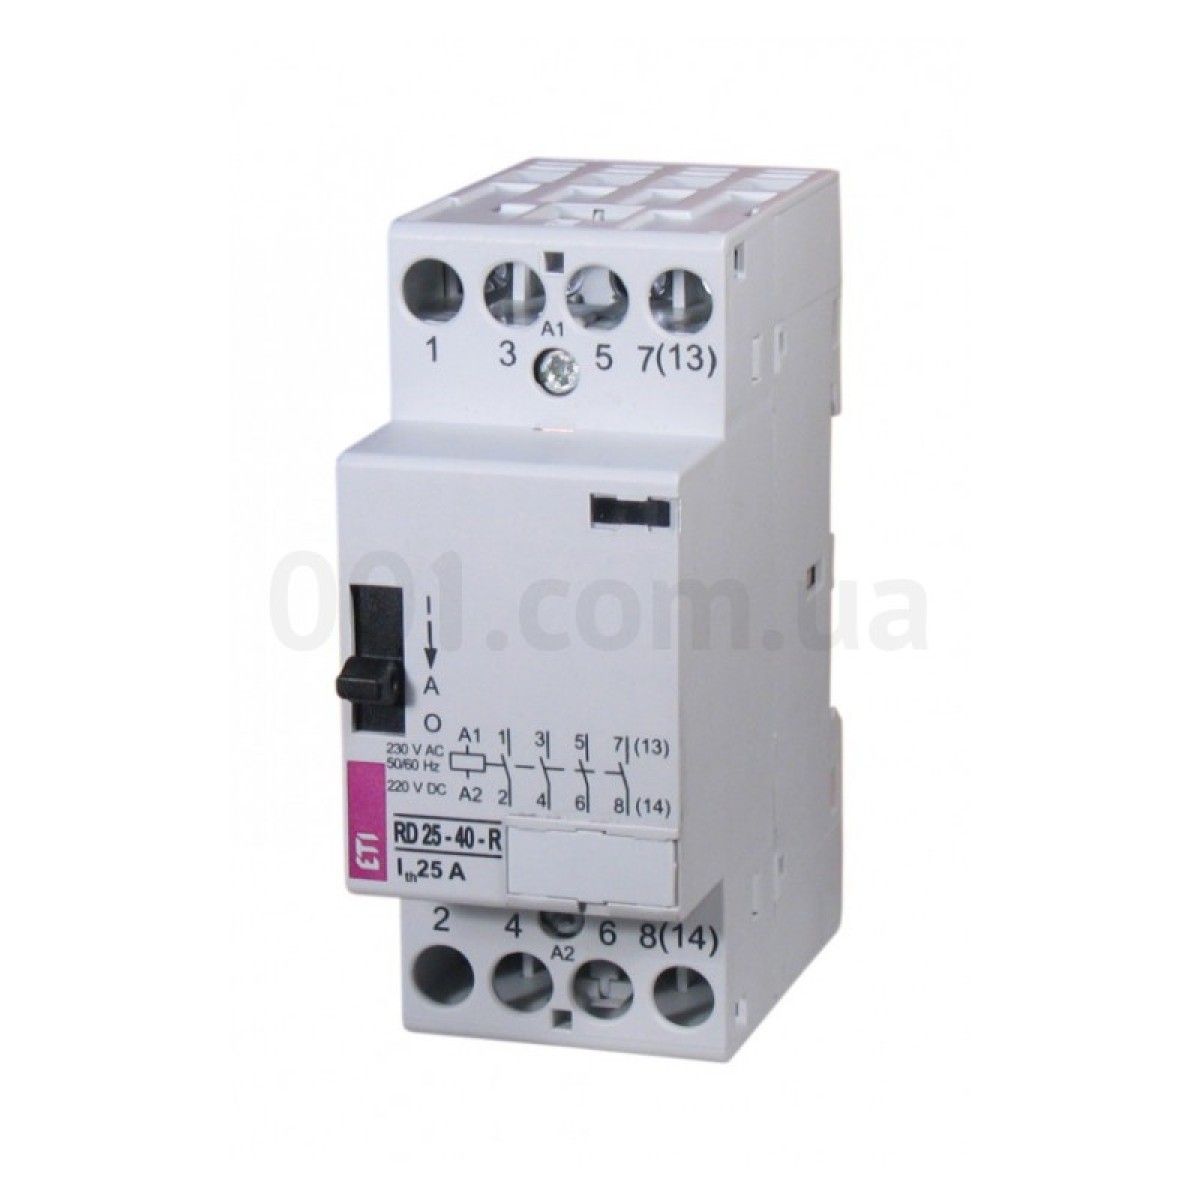 Контактор модульный RD 25-40-R 25A 230V AC/DC 4NO с ручным управлением, ETI 256_256.jpg